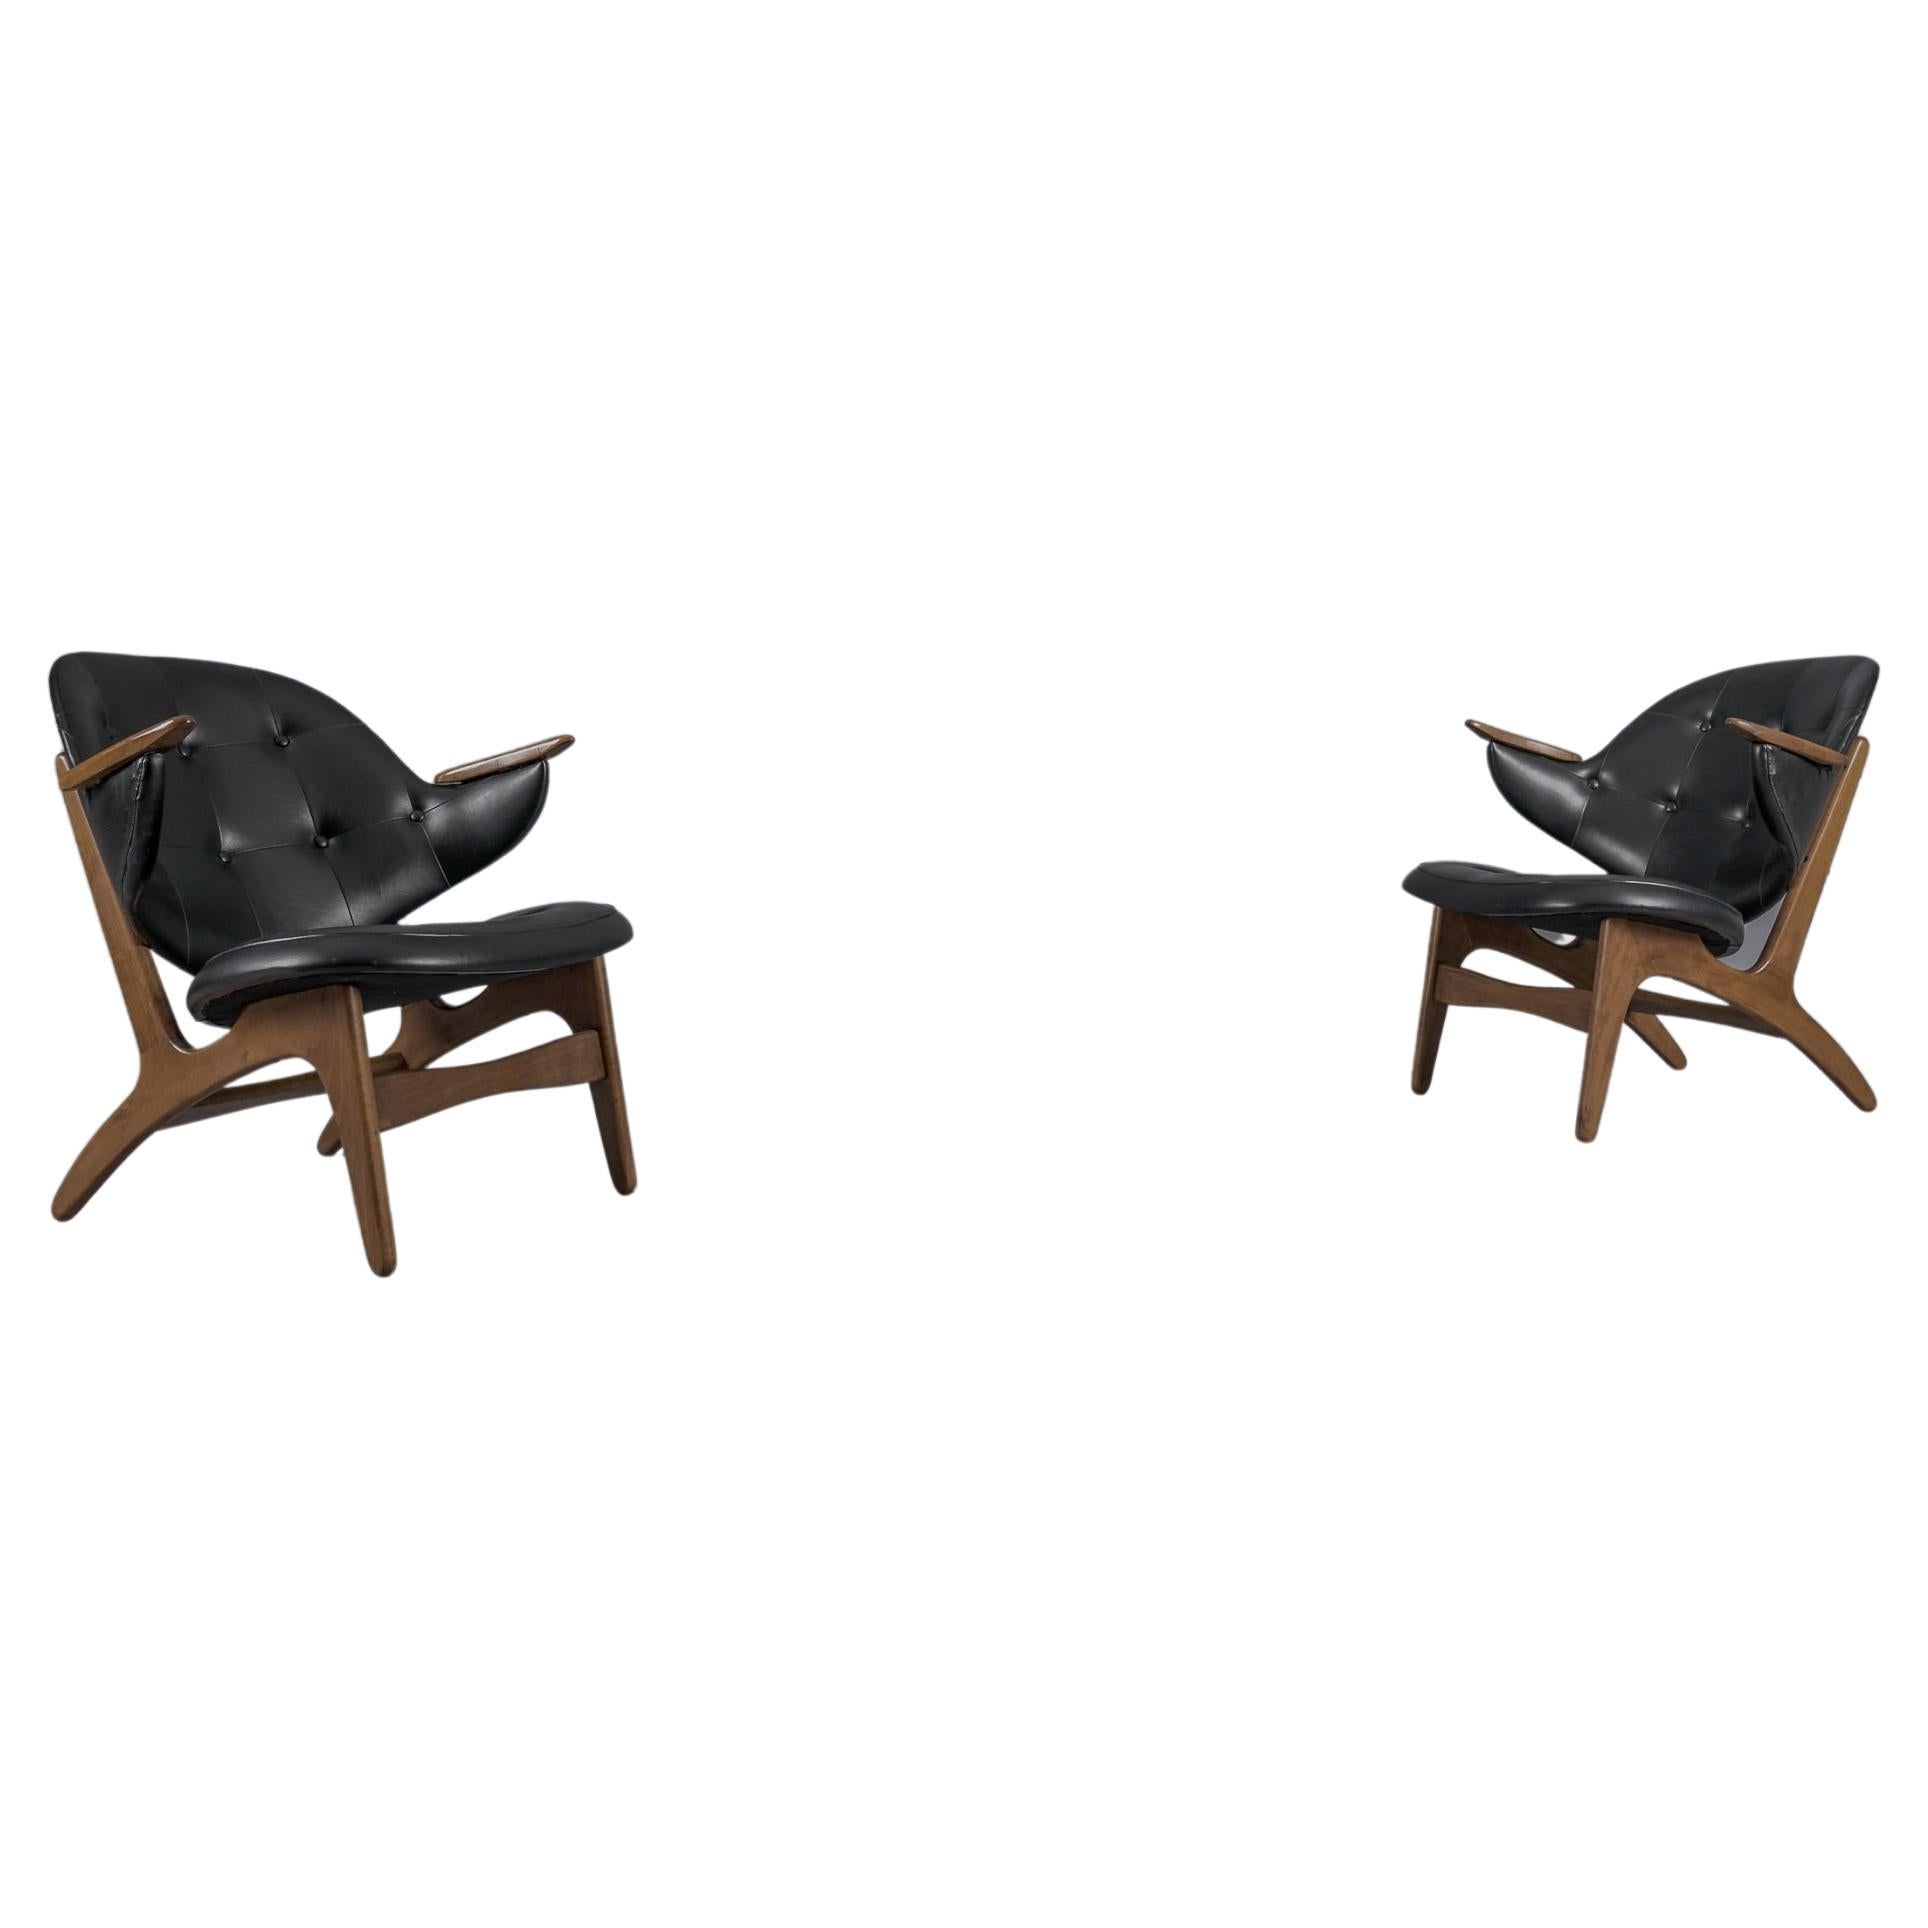 Easy Chairs Modell 33 von Carl Edward Matthes, 1950er Jahre, Paar